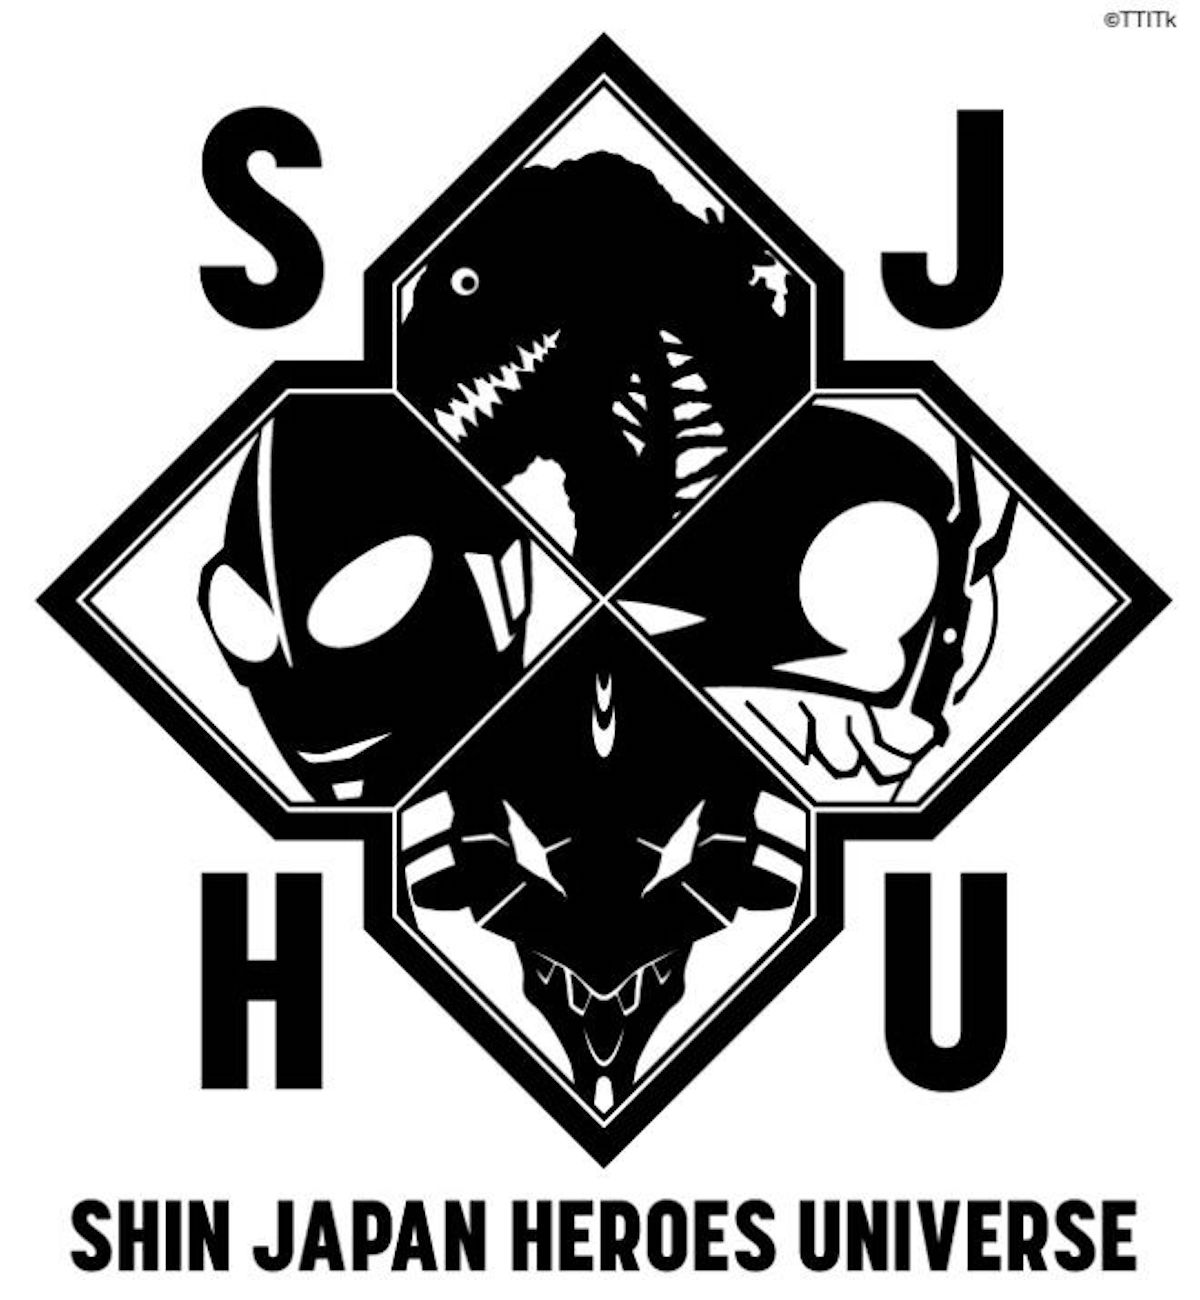 Arriva un nuovo universo cinematografico: Shin Japan Heroes Universe